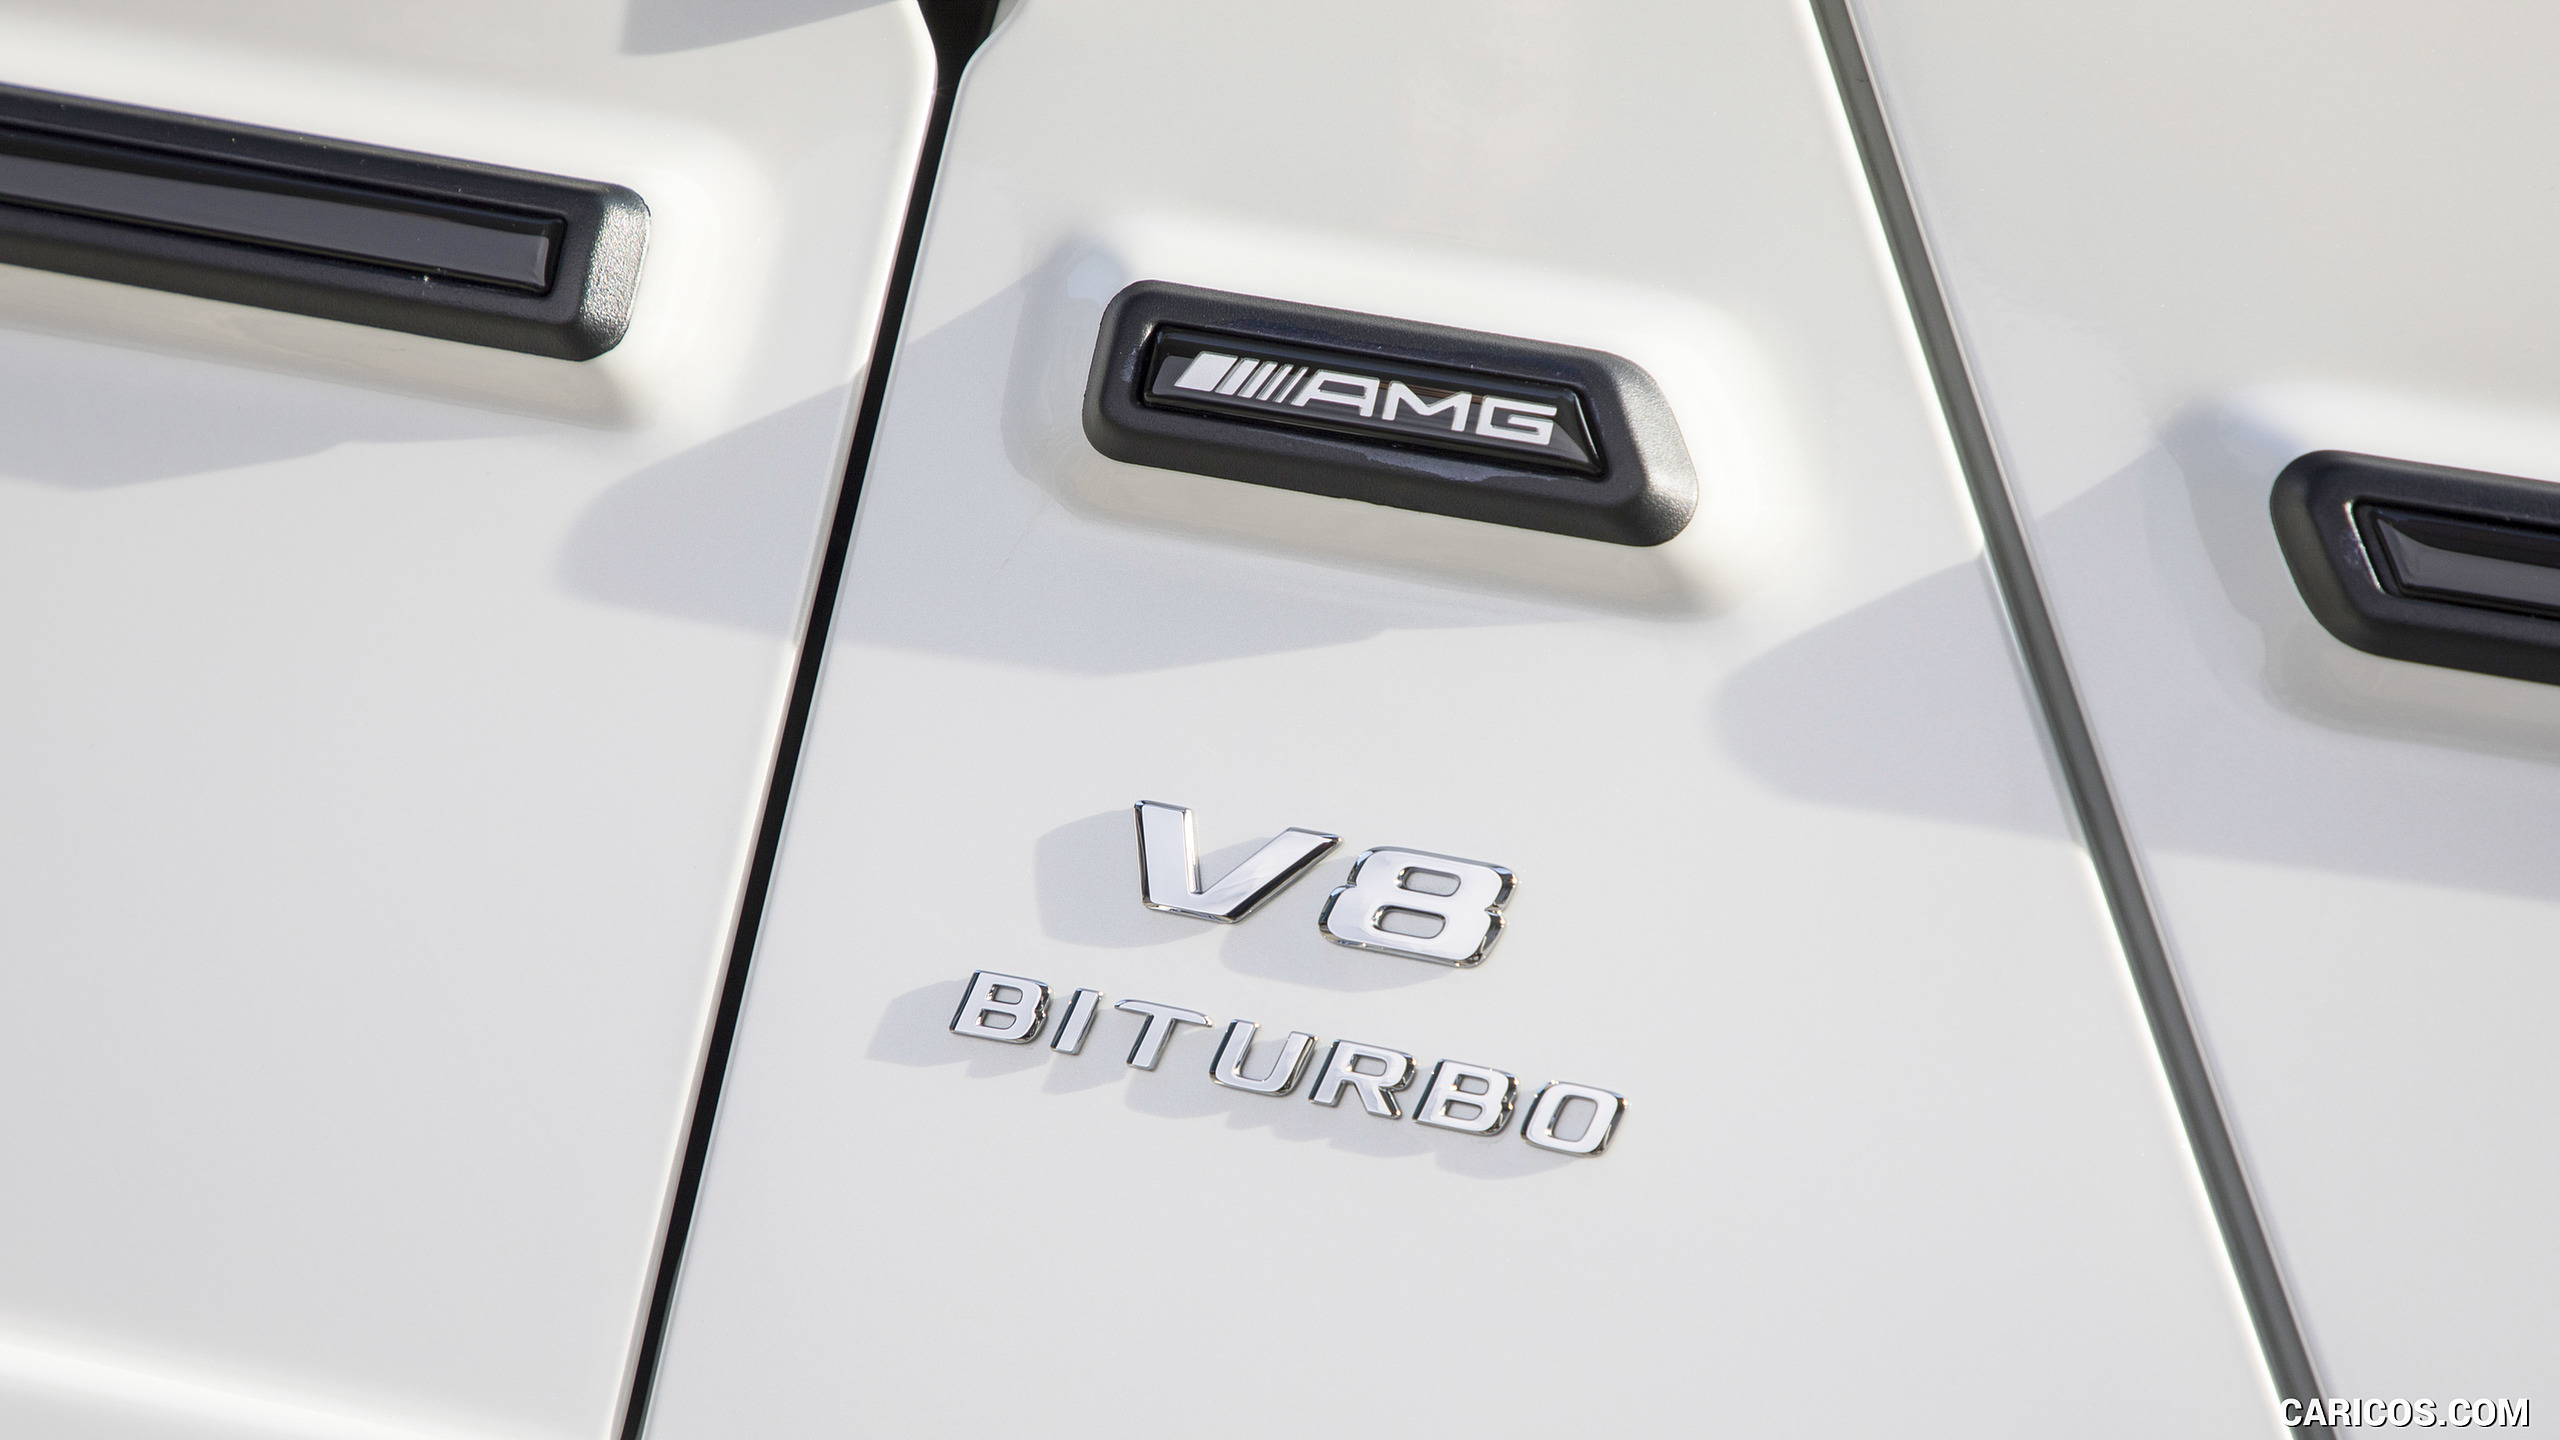 2019 Mercedes-AMG G63 (Color: Designo Diamond White Bright) - Badge, #110 of 452